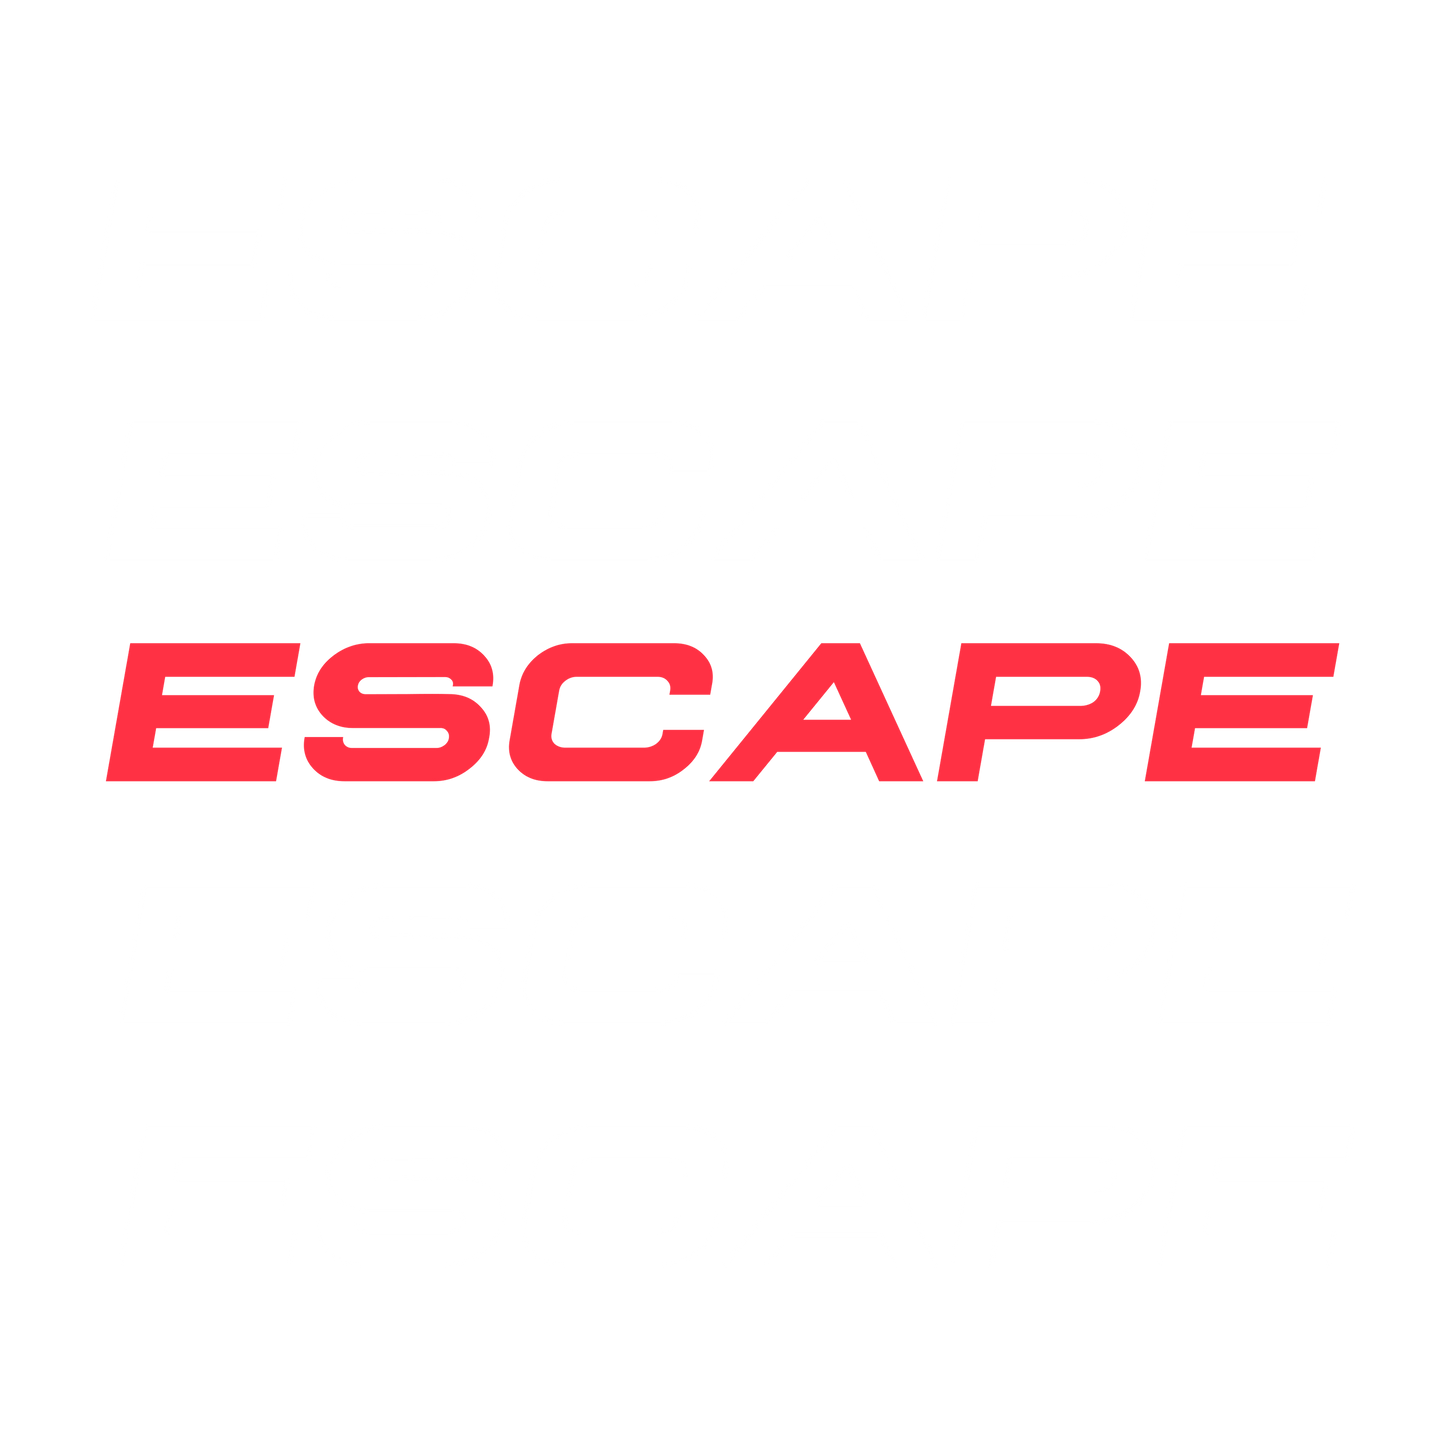 Escape by Aditya Shrivastav - T-Shirt